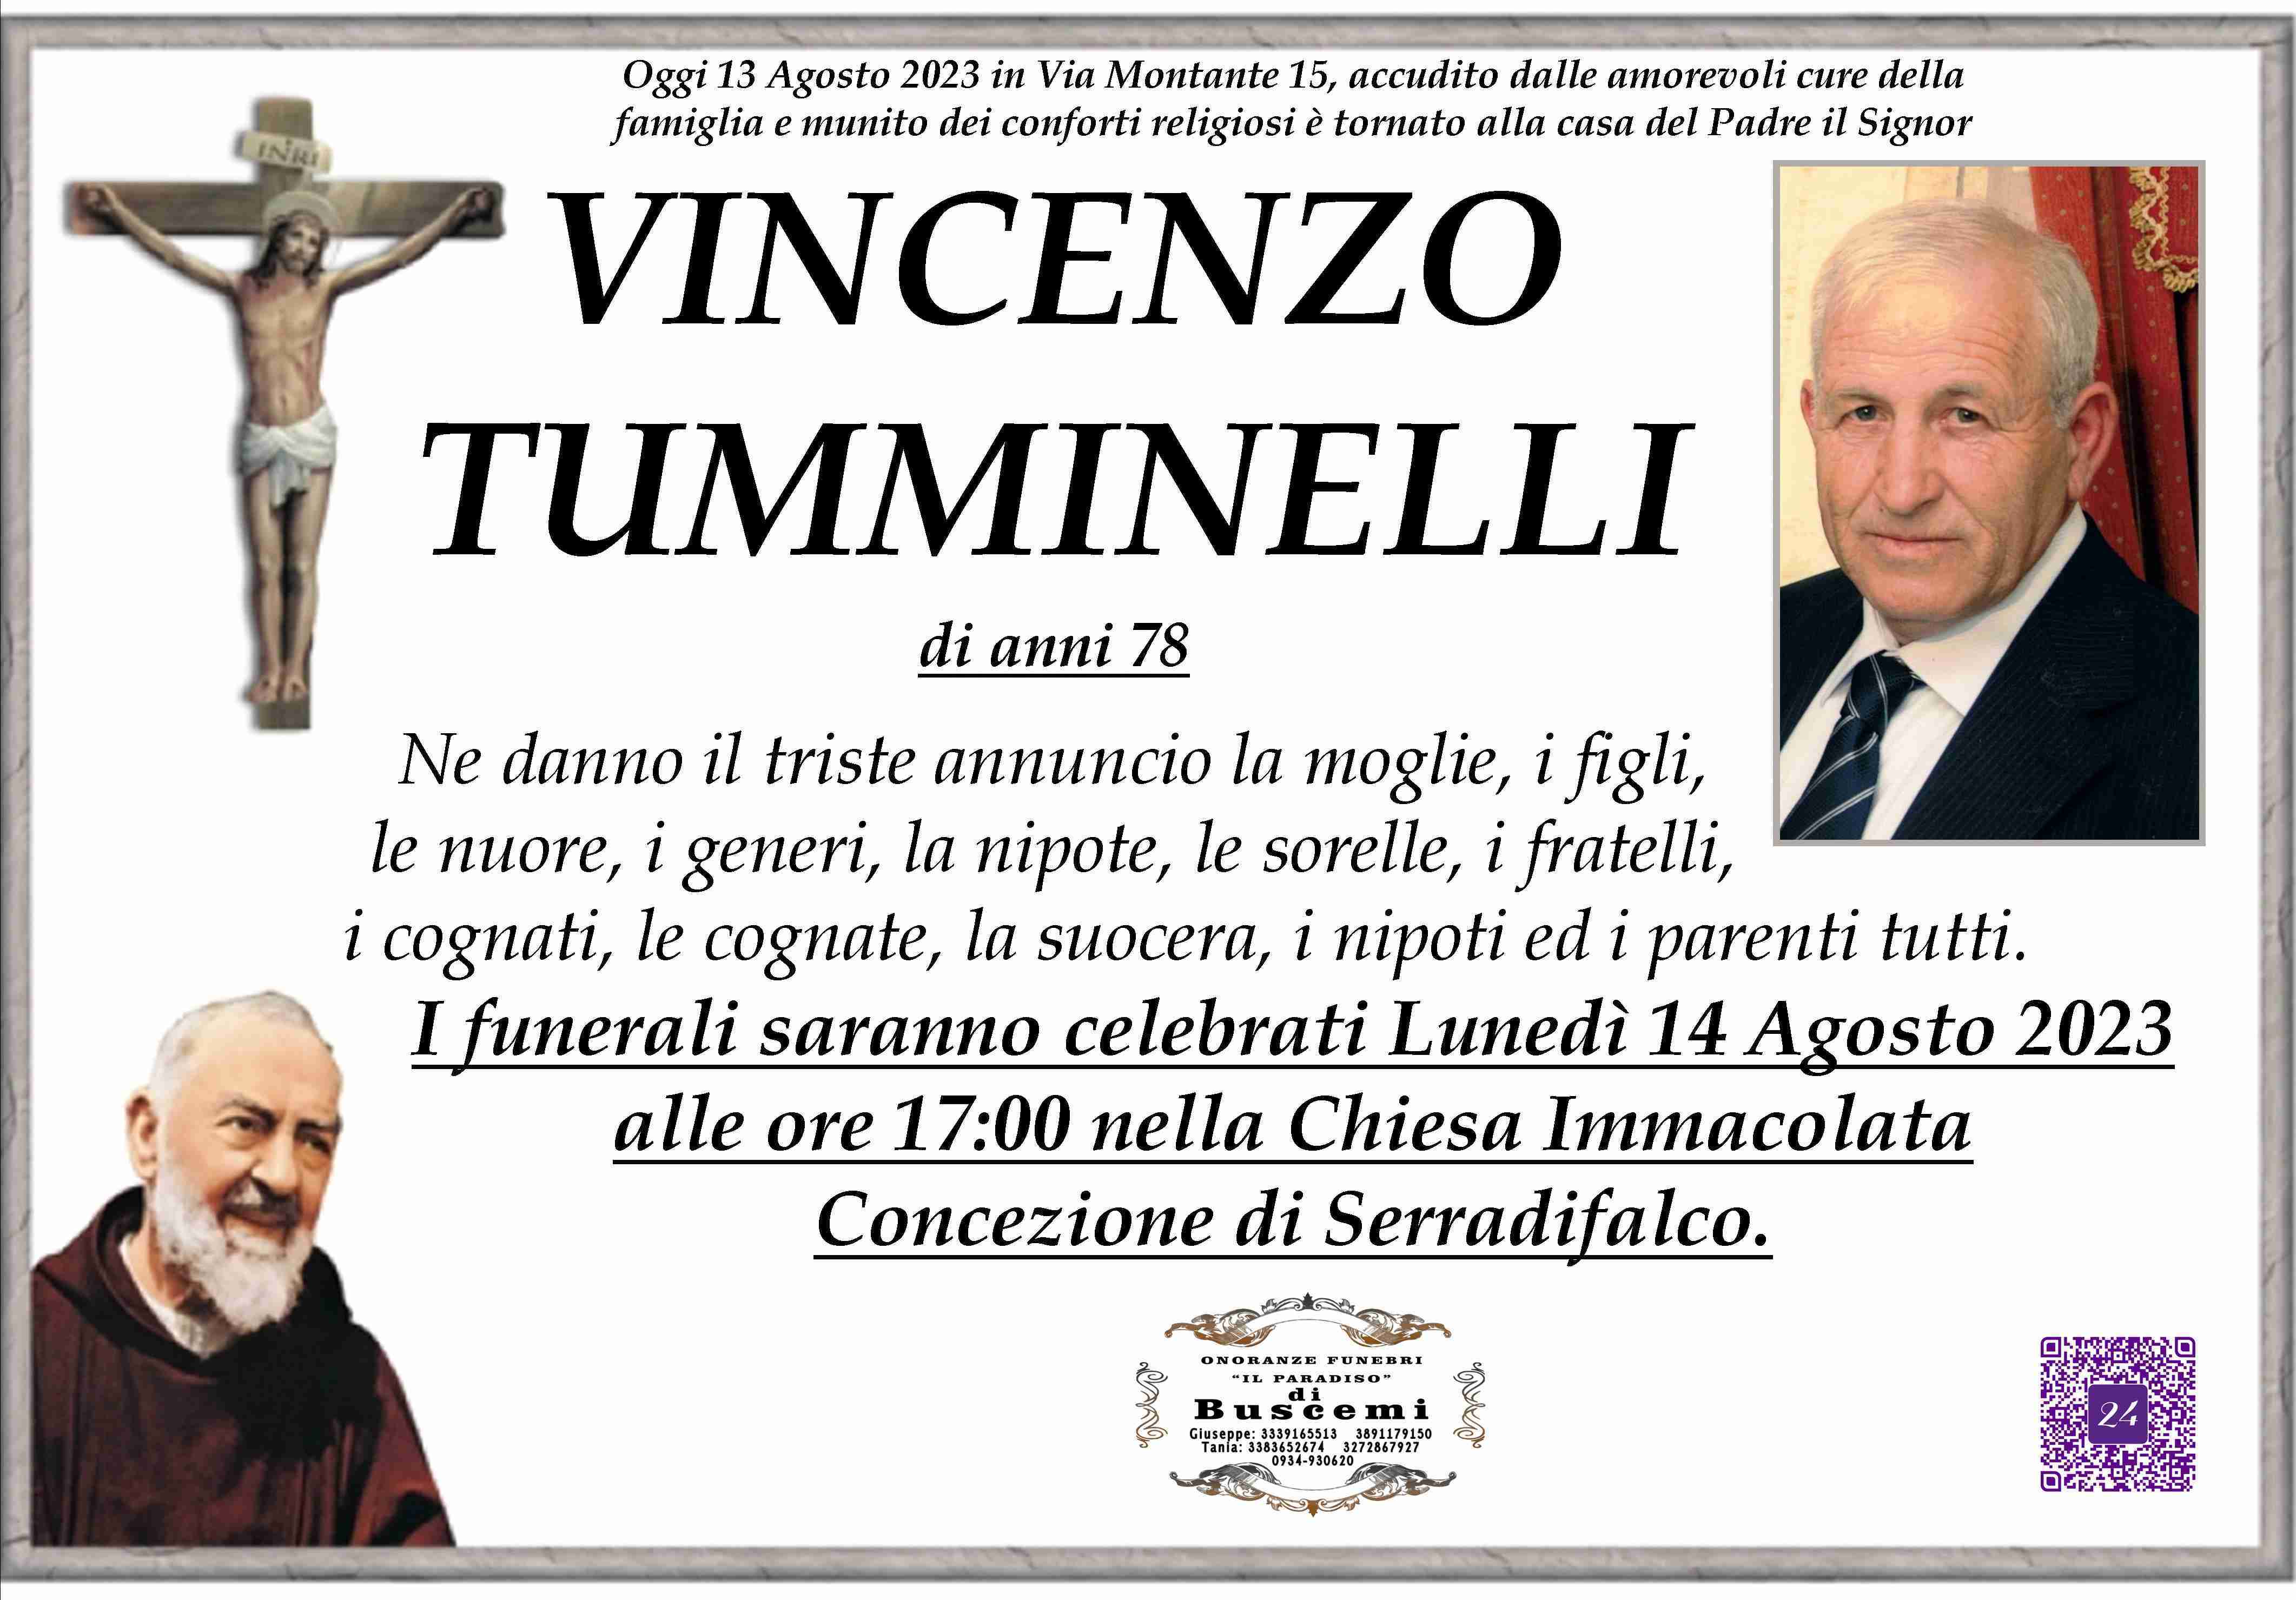 Vincenzo Tumminelli